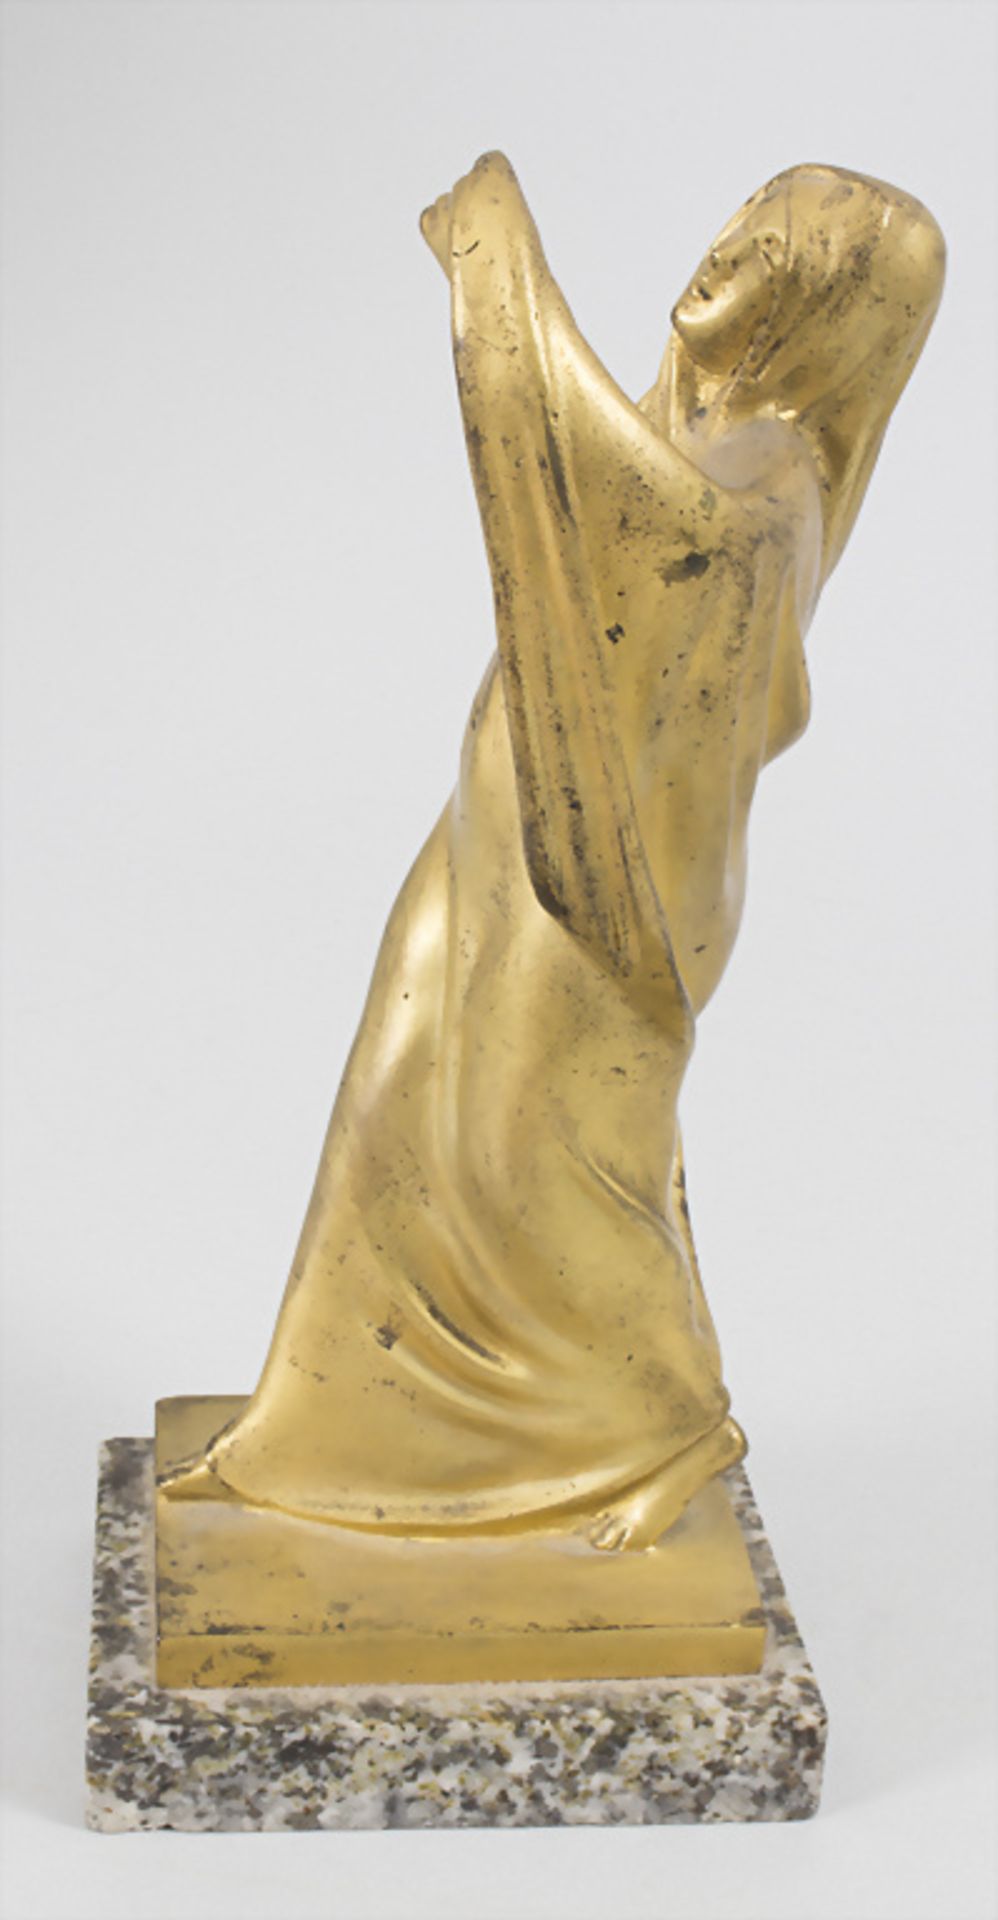 Jugendstil Bronze 'Tanagra Skulptur' / Tanagra sculpture en bronze à patine dorée / An Art ... - Image 2 of 7